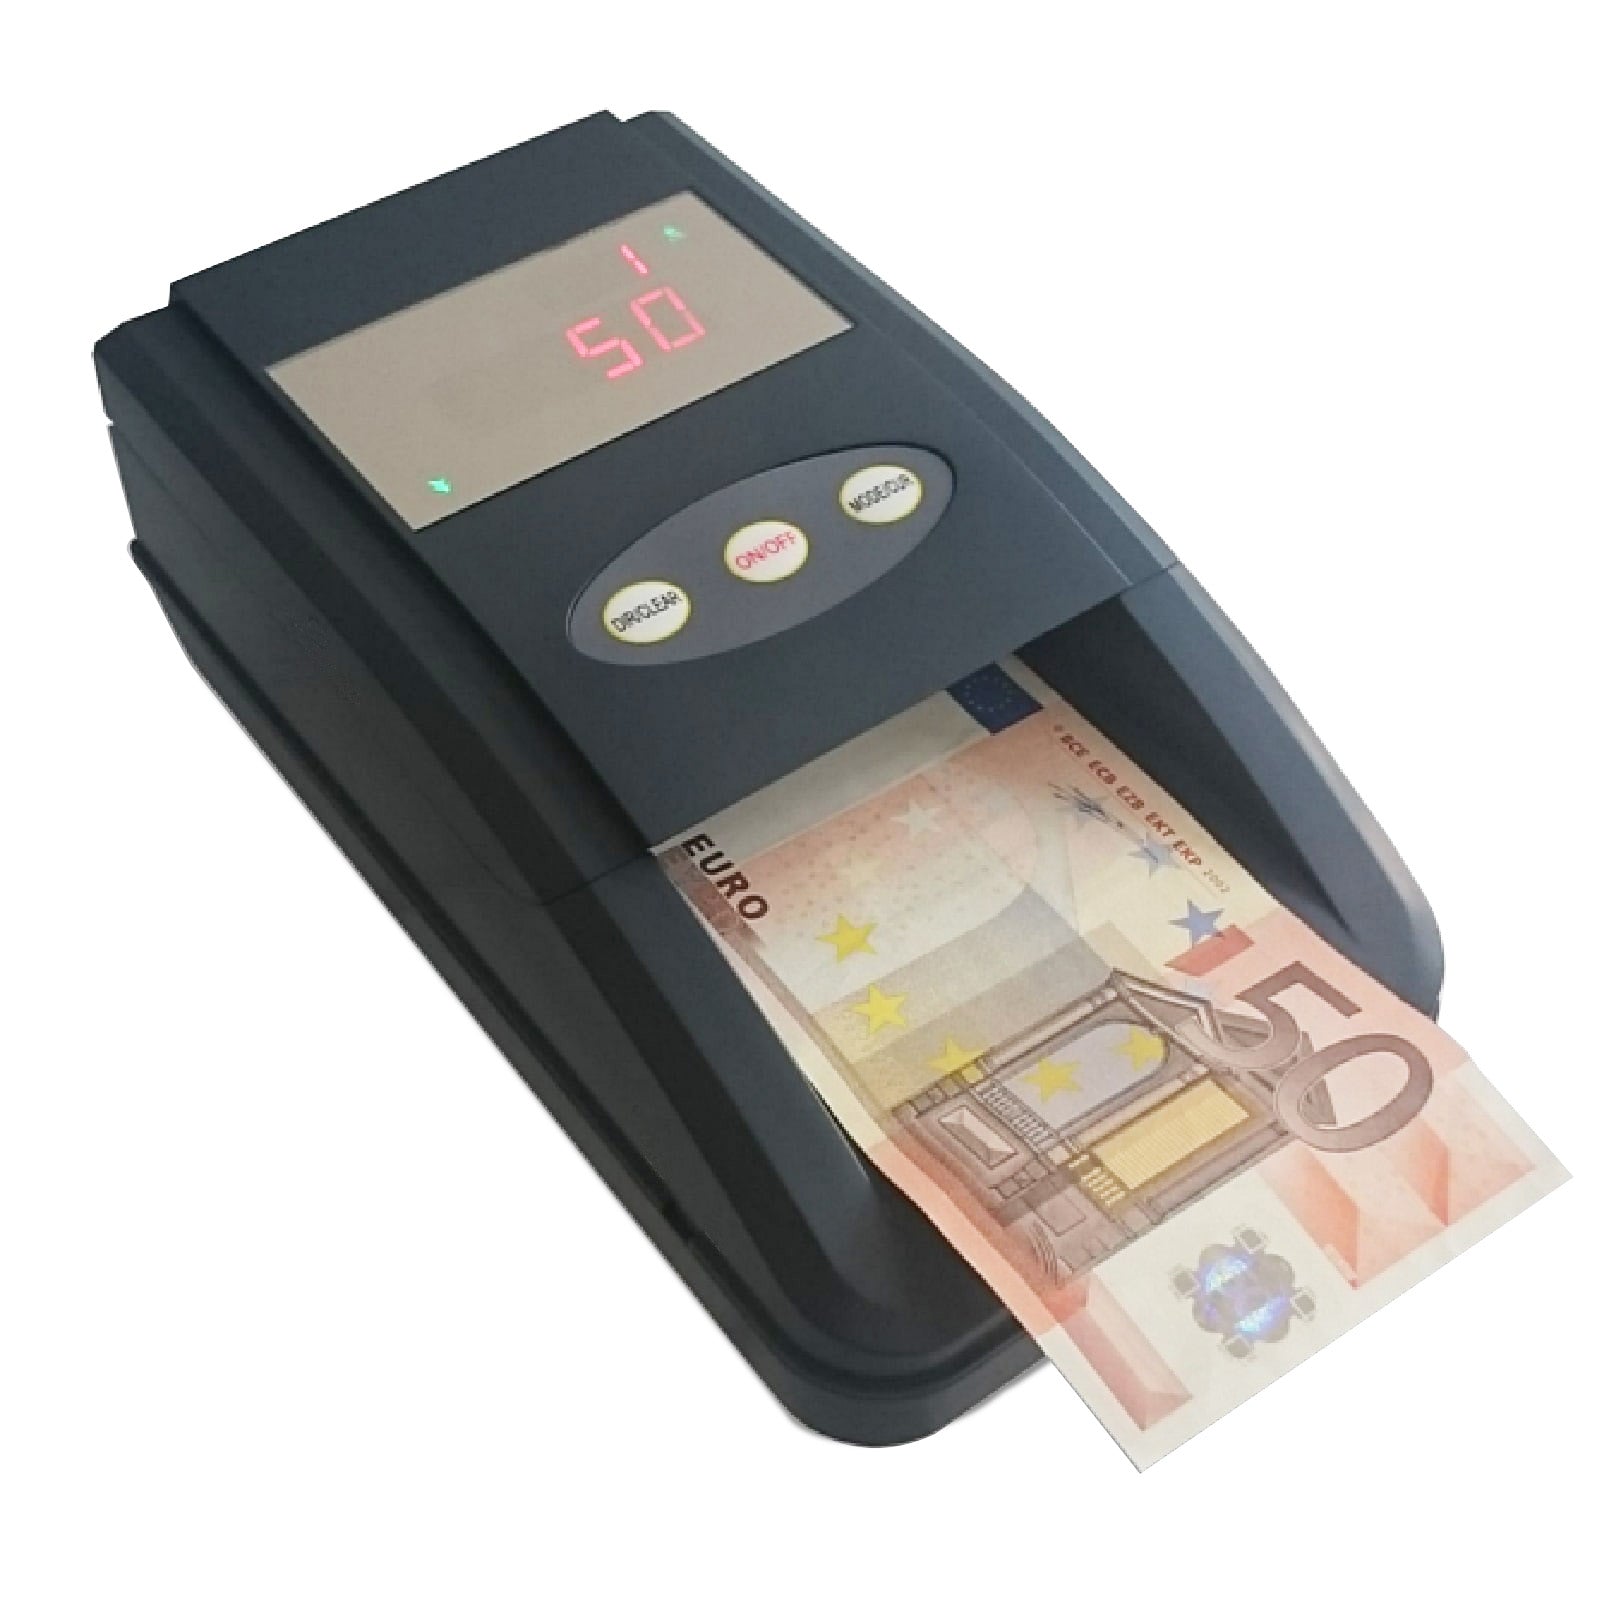 Rilevatore Banconote False Money Detector Negozio Verifica Rileva